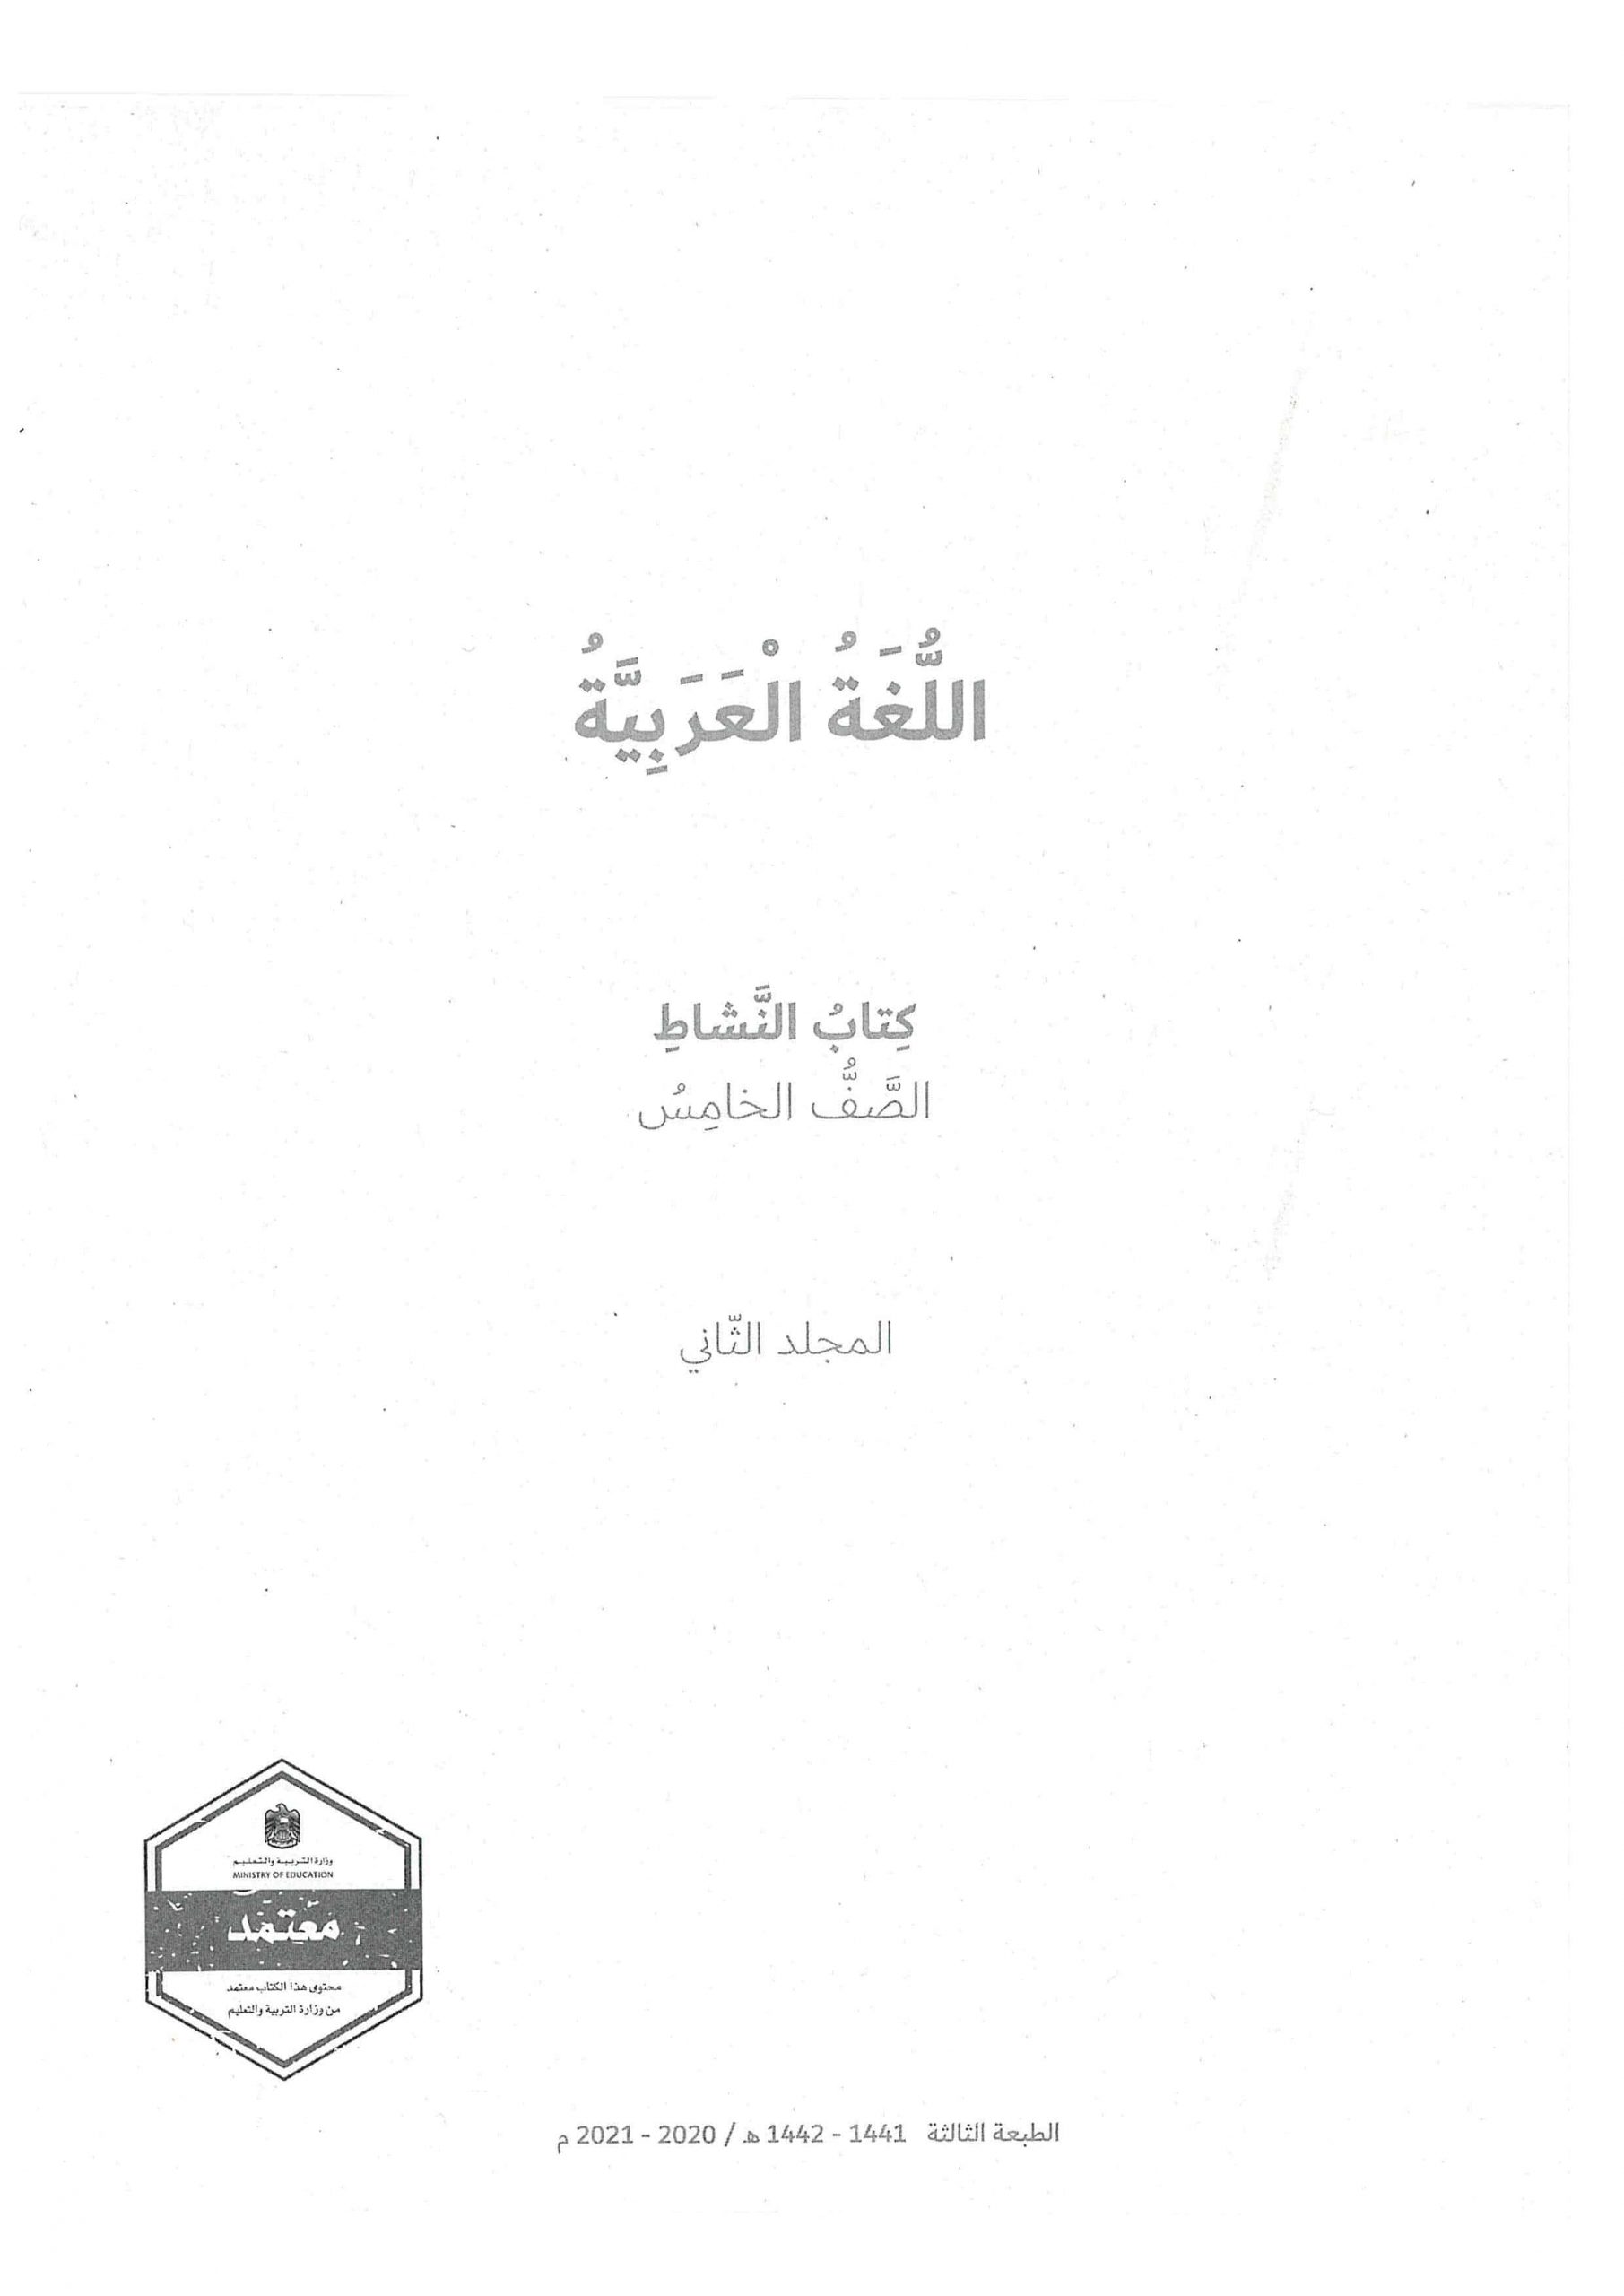 كتاب النشاط الفصل الدراسي الثاني 2020-2021 الصف الخامس مادة اللغة العربية 